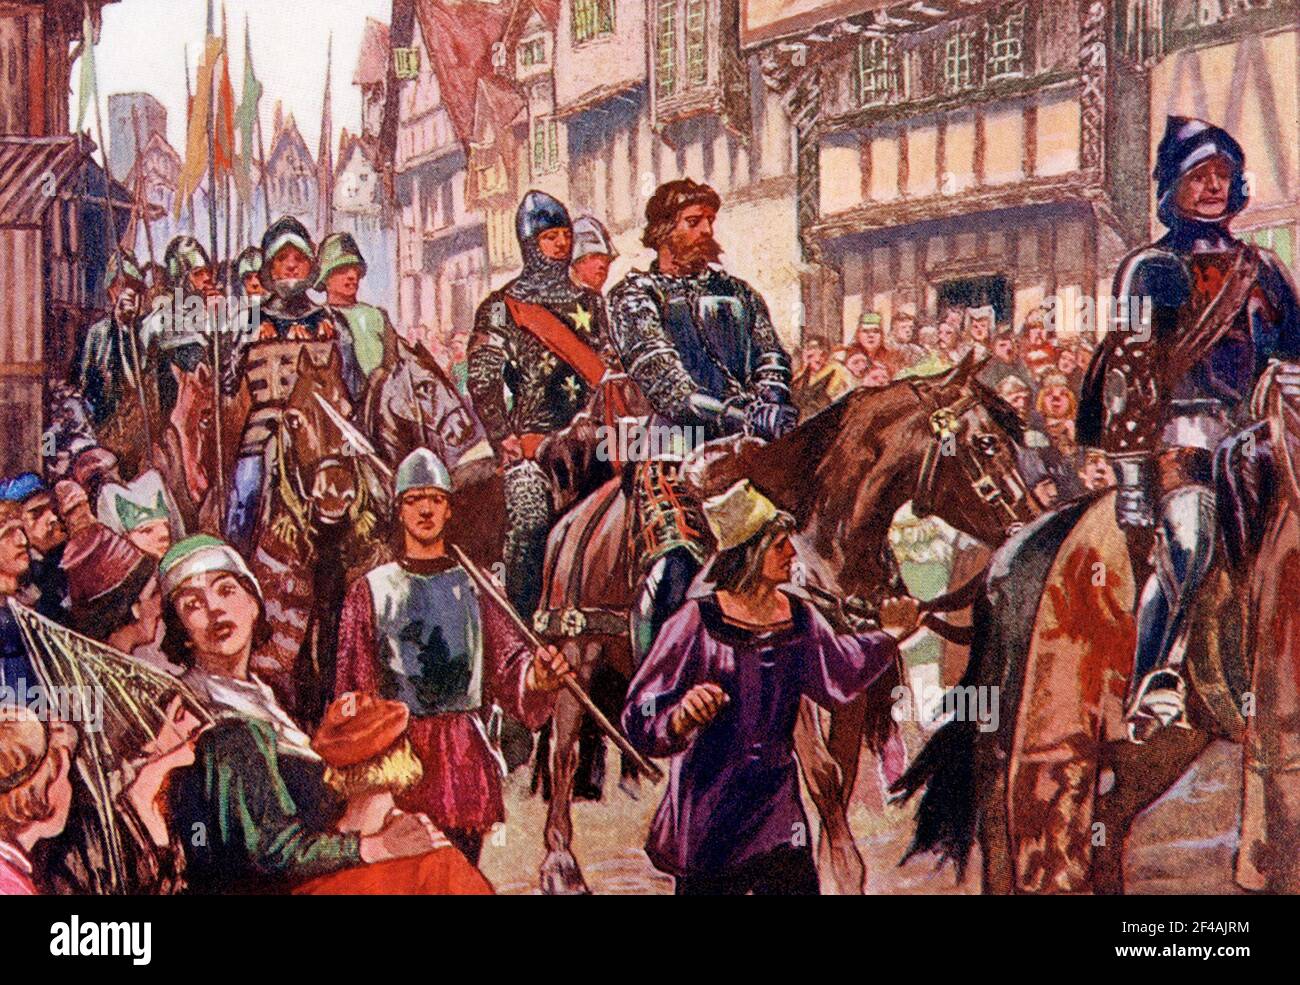 Cette illustration de 1902 montre Wallace pris à Londres en chaînes. Sir William Wallace a promu une résistance active au règne du roi Edward I en Écosse après qu'Edward ait forcé l'abdication et l'usurpation de la couronne de John Balliol. Après la défaite à la bataille de Falkirk le 22 juillet 1298, Wallace s'est rendu en France où il a tenté d'obtenir le soutien français pour la rébellion en Écosse, mais l'effort s'est avéré finalement vain et Wallace, de retour en Grande-Bretagne mais refusant de se soumettre à la domination anglaise, est resté en campagne. Il a été capturé le 5 août 1305 par Sir John Monteith près de Glasgow. Emmenée à Carlisle Banque D'Images